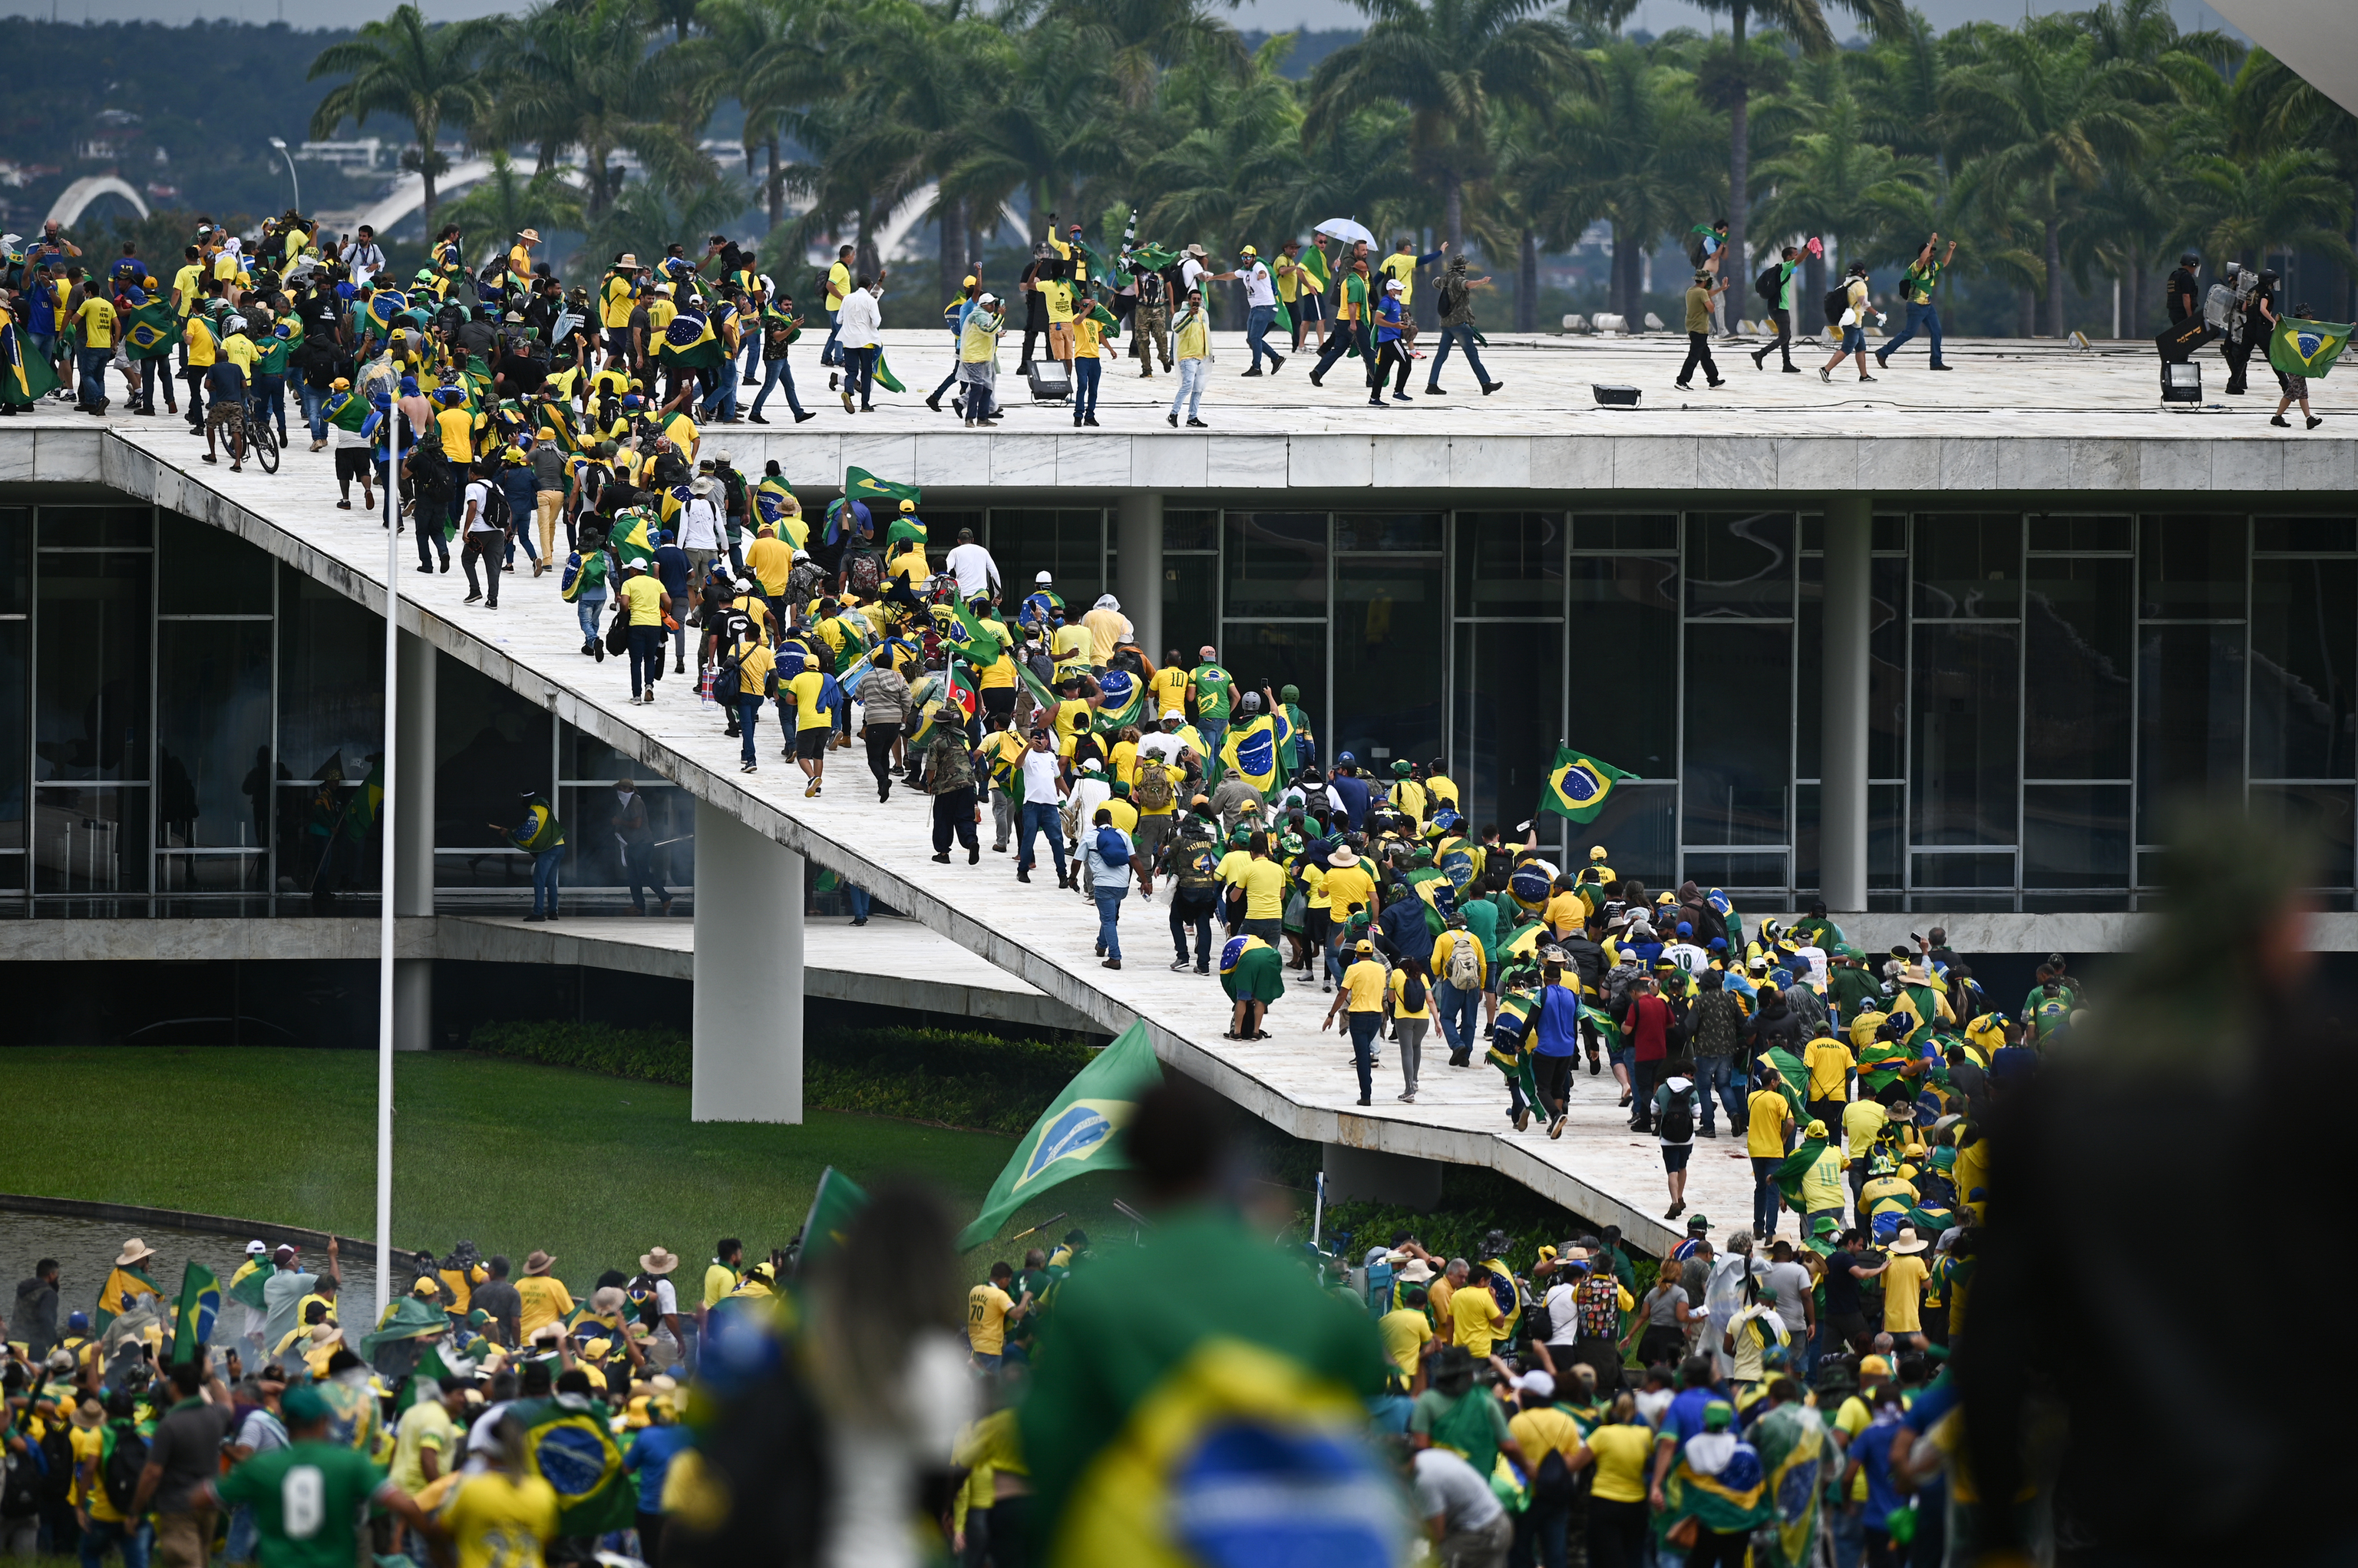 Extremistas invaden el Congreso Nacional, el Supremo Tribunal Federal de Brasil y el Palacio del Planalto.